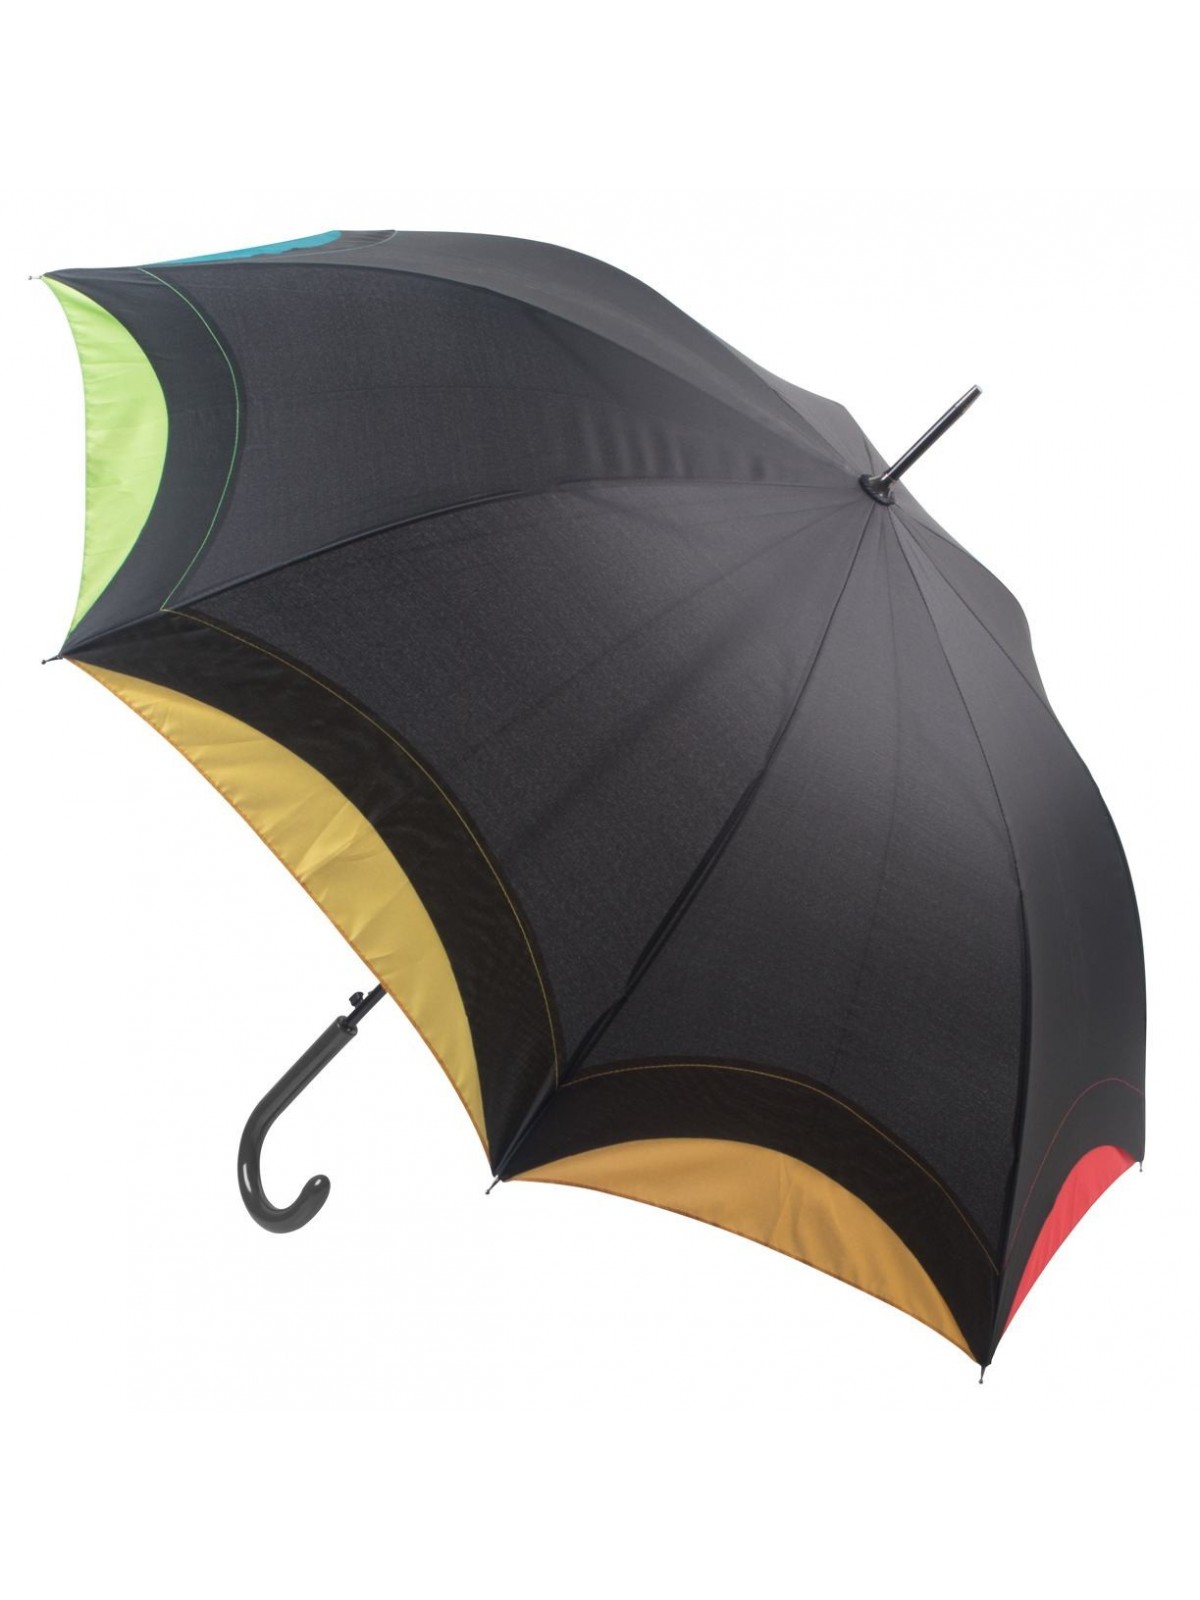 10-431 Parapluie publicitaire Arcus personnalisé